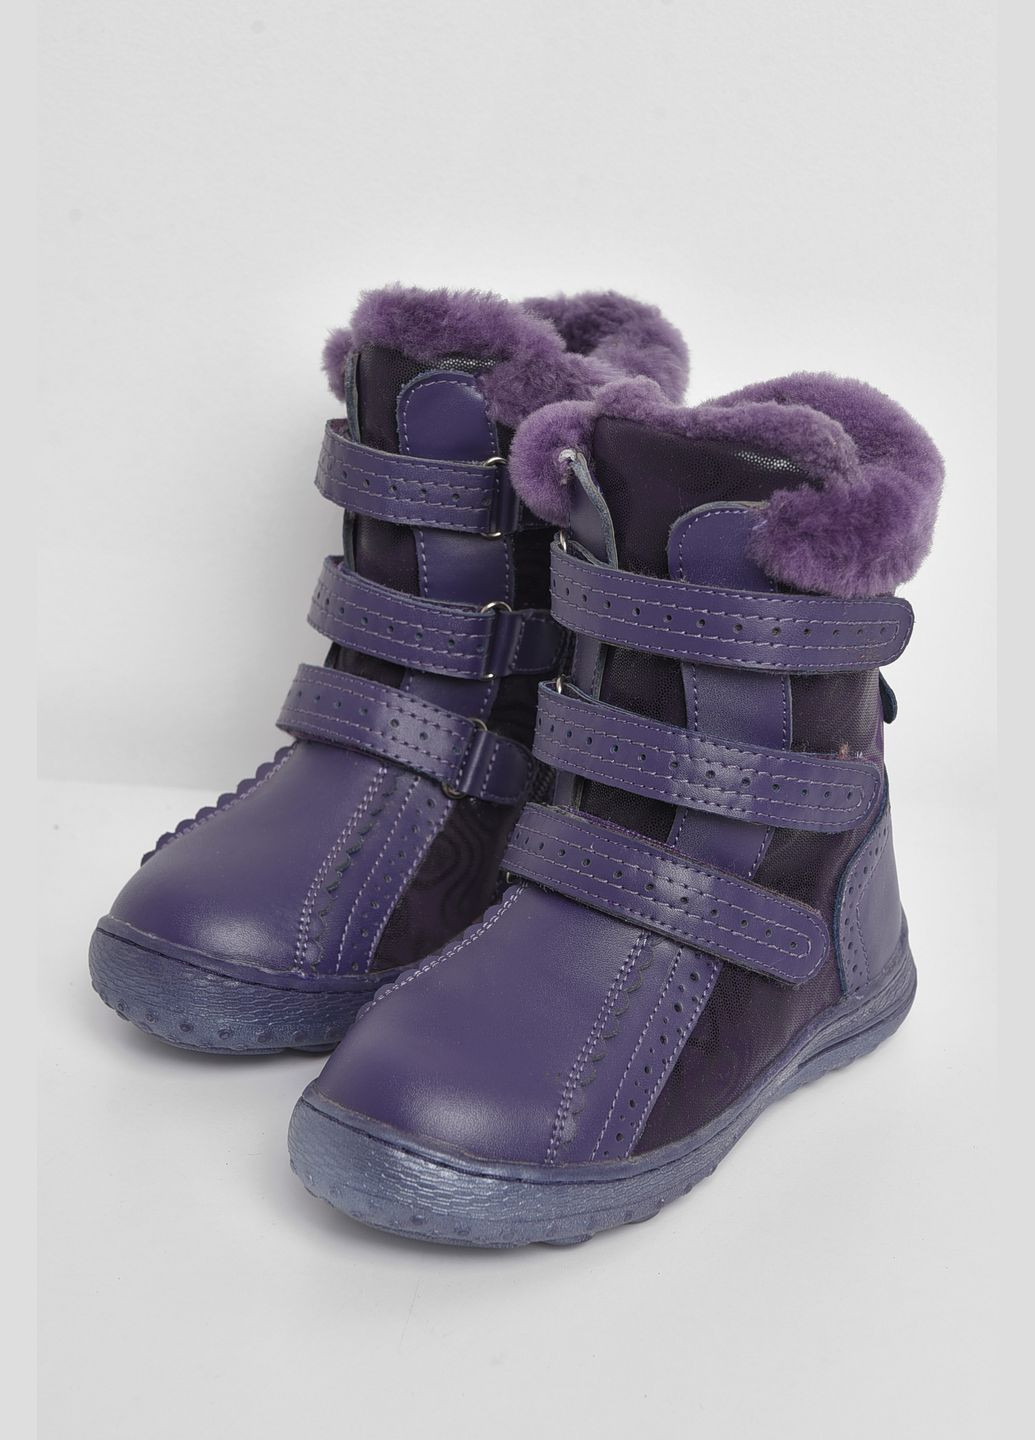 Зимние сапоги детские для девочки на меху фиолетового цвета Let's Shop